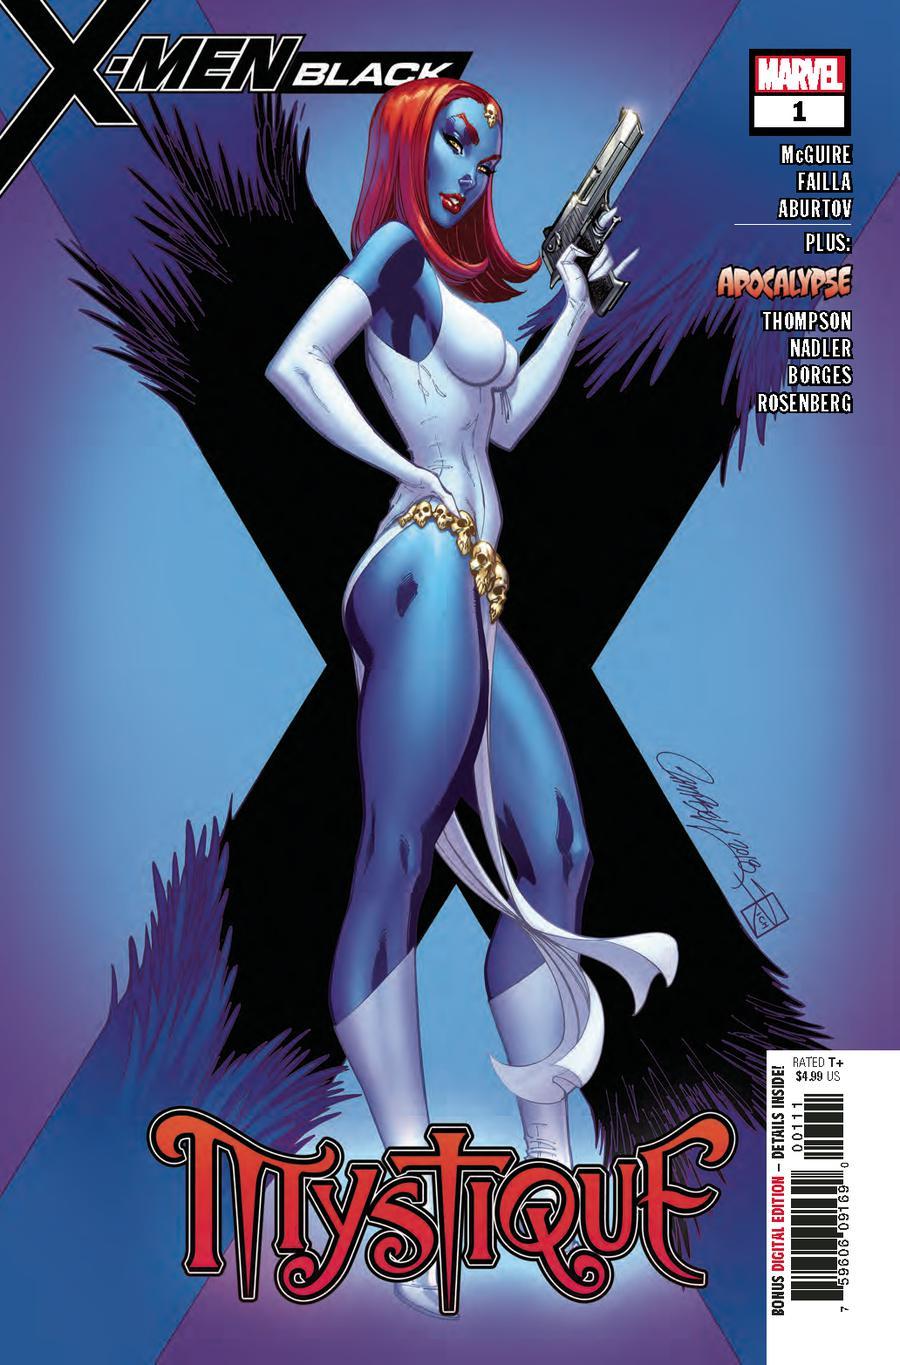 X-Men Black Mystique Vol. 1 #1